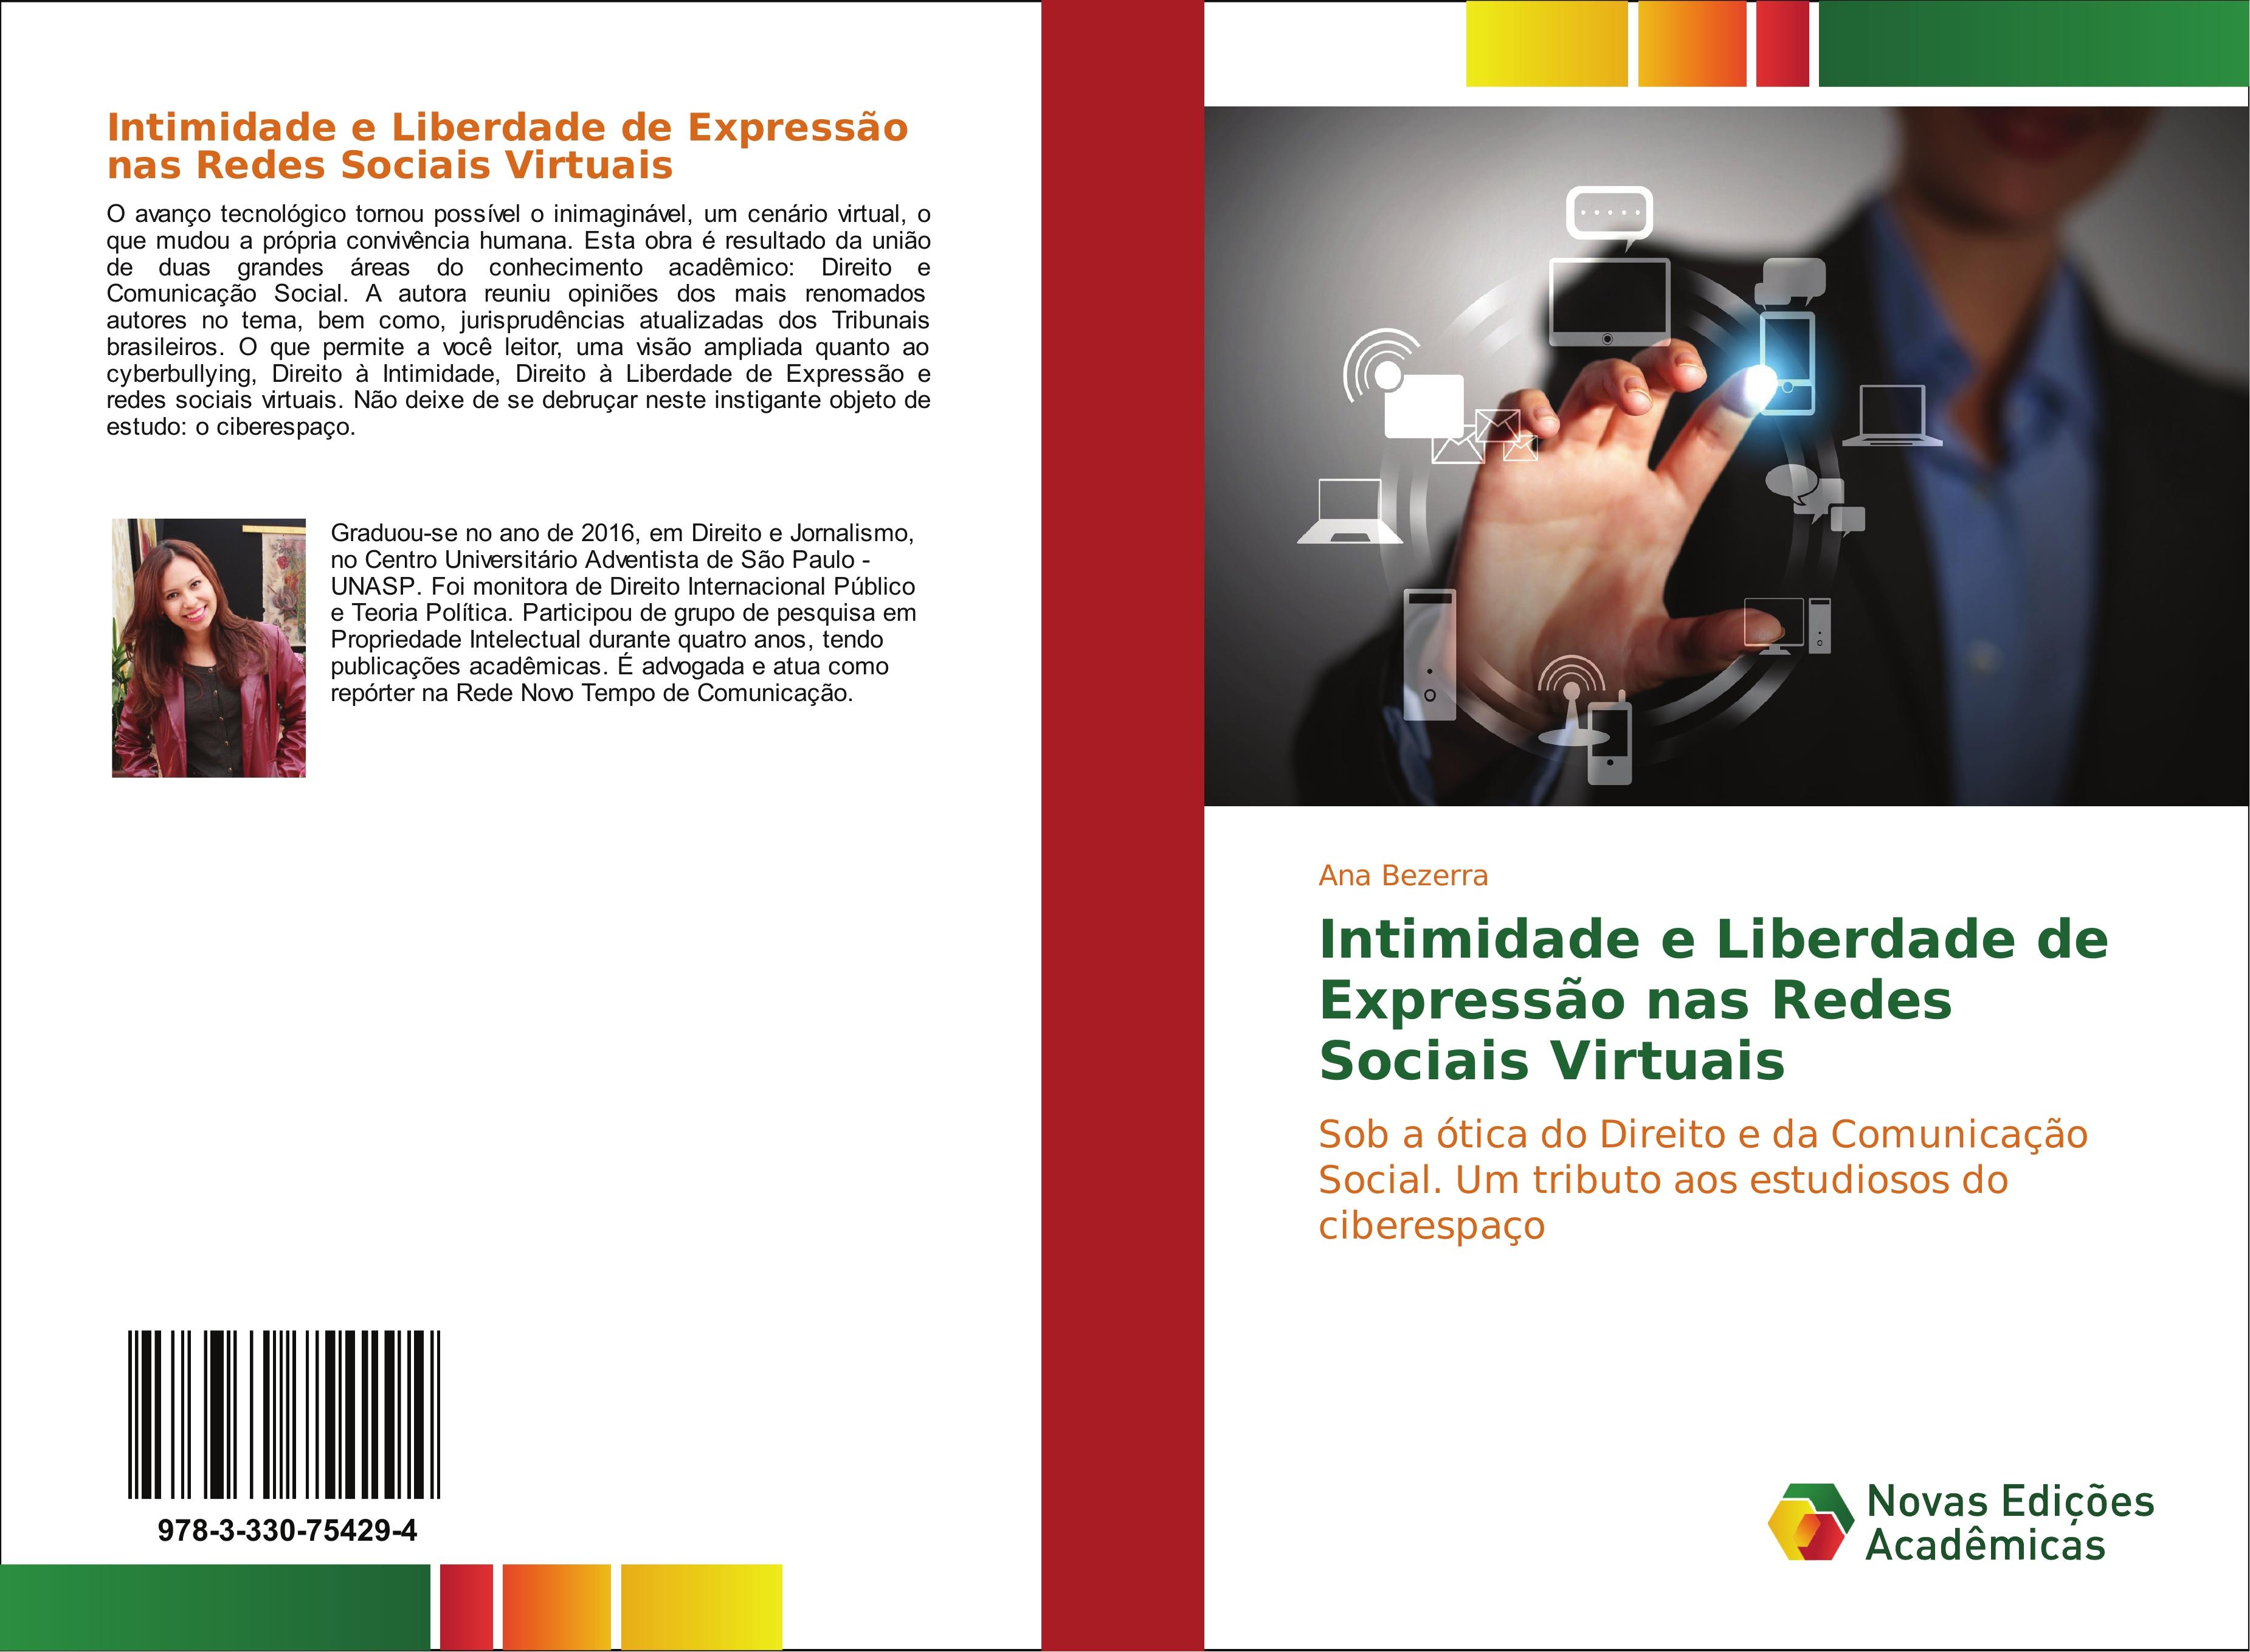 Intimidade e Liberdade de Expressão nas Redes Sociais Virtuais - Ana Bezerra